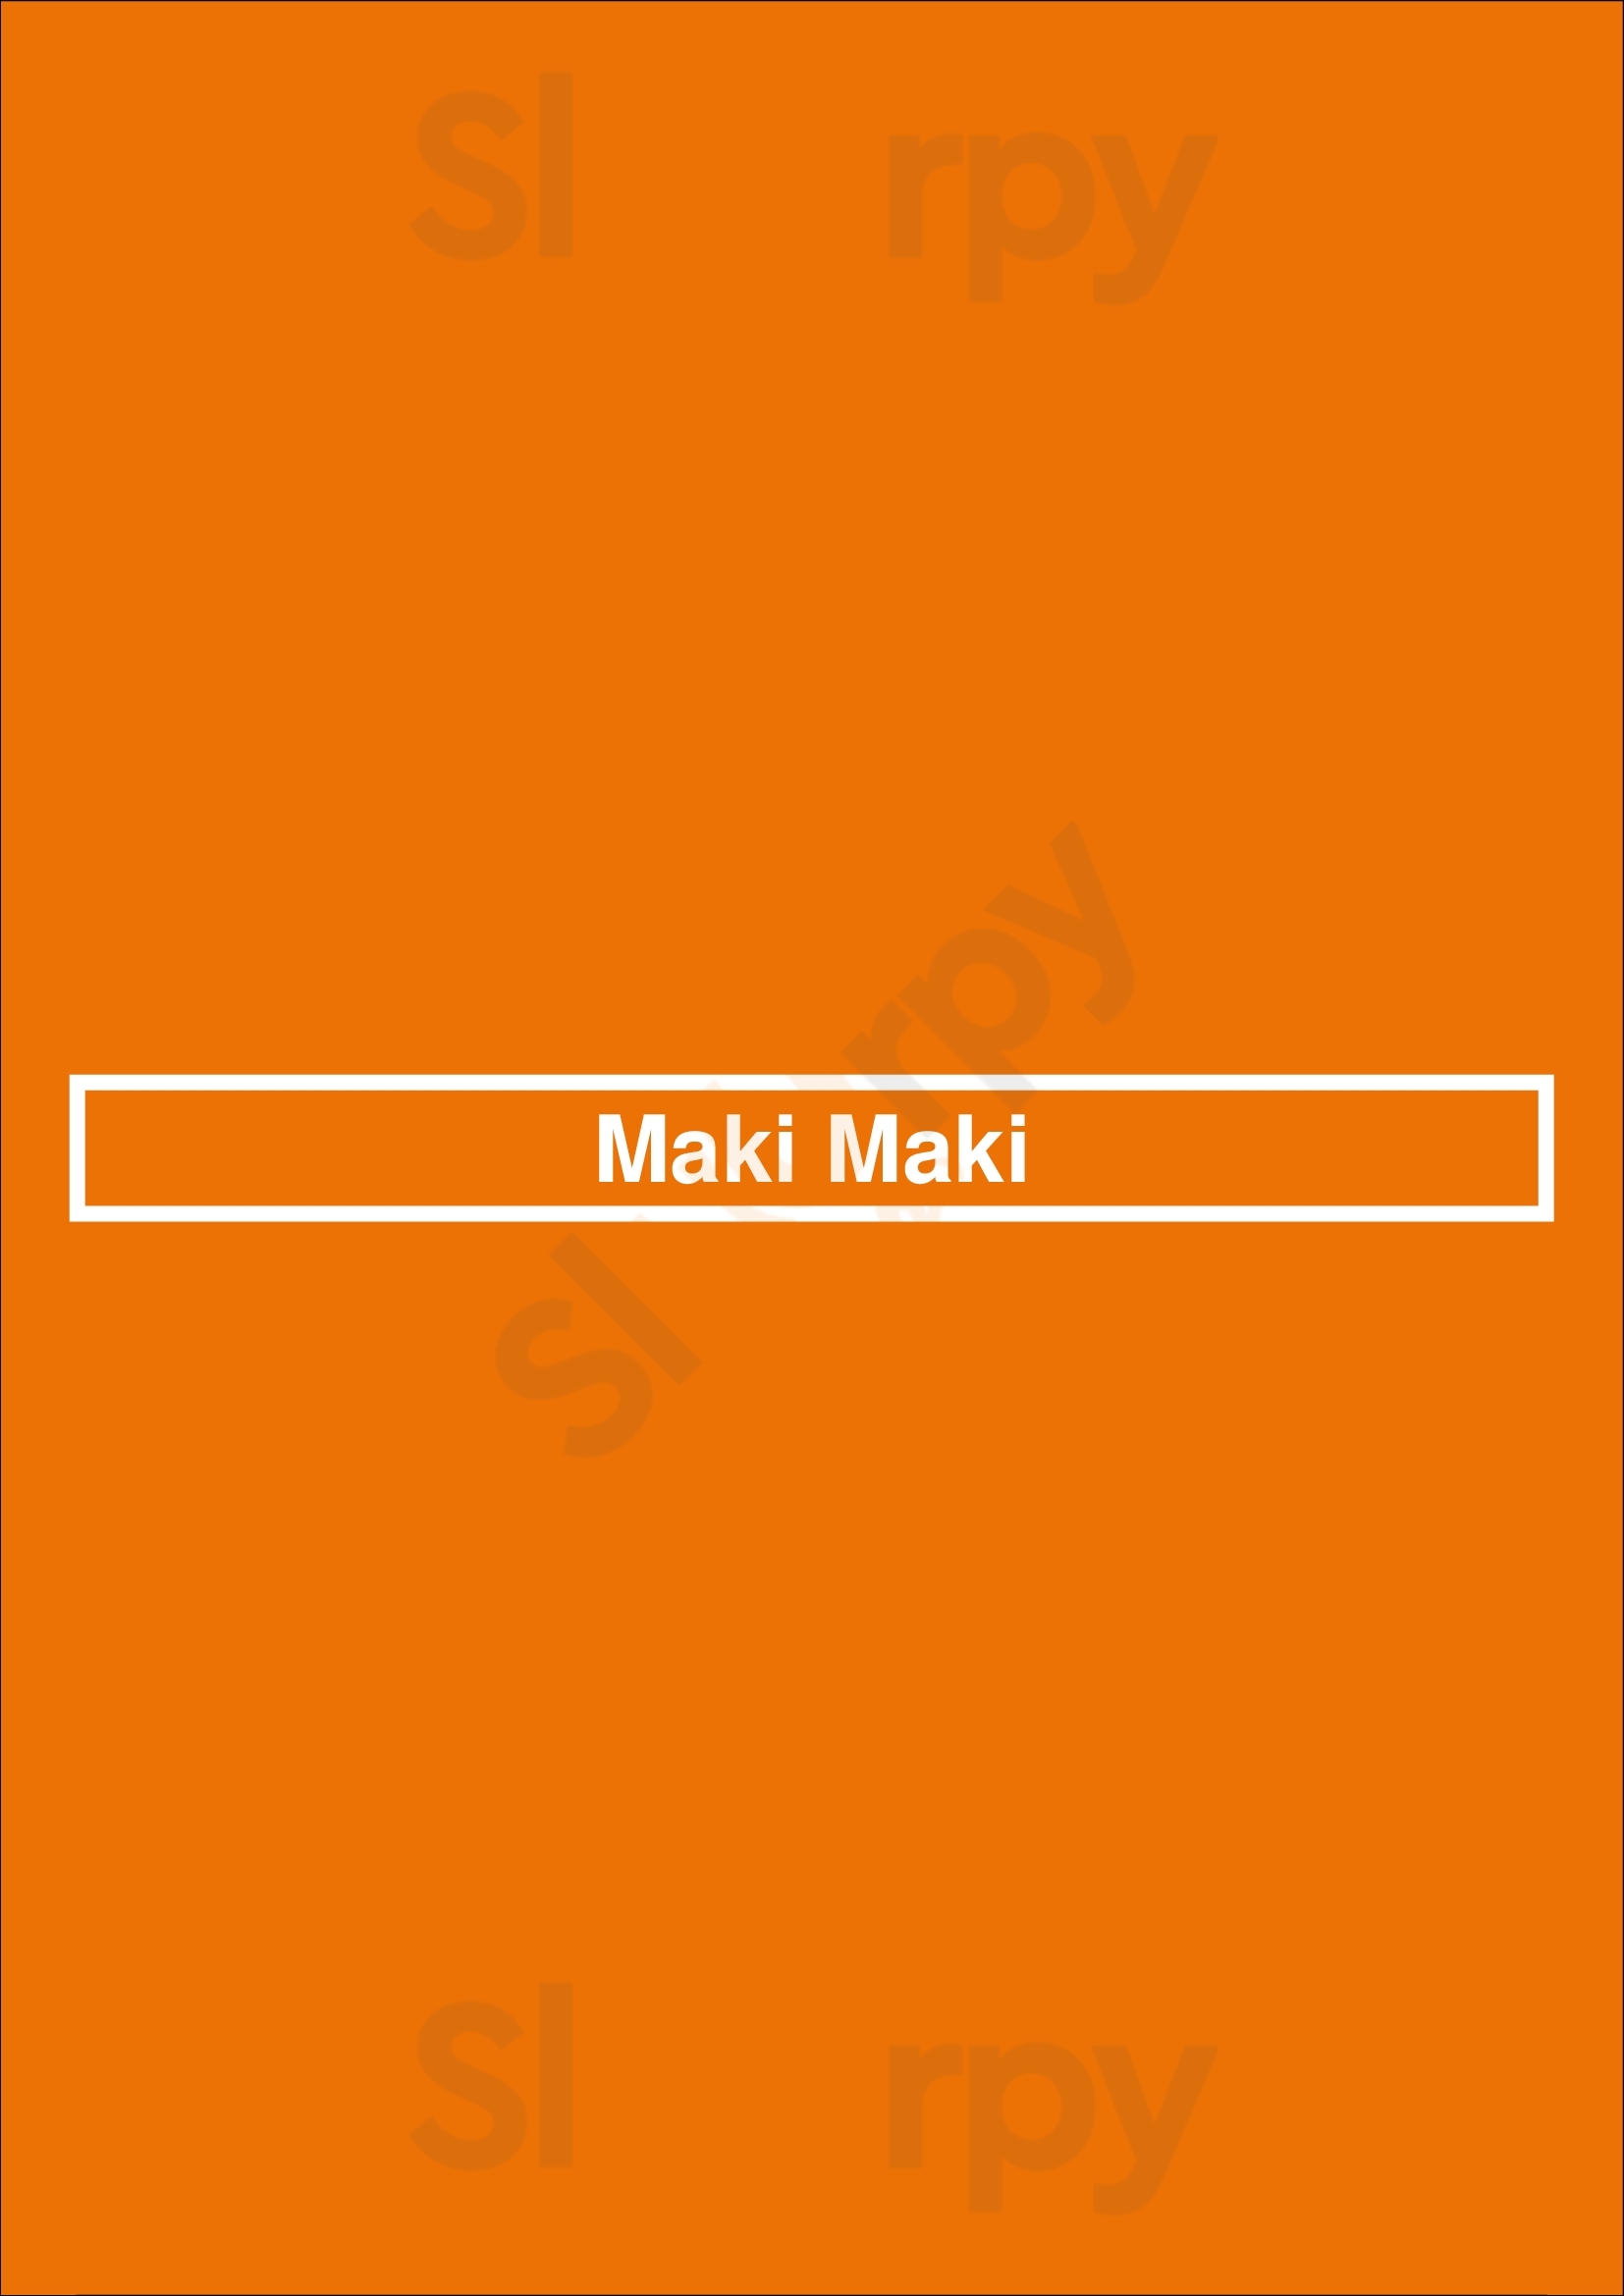 Maki Maki Edmonton Menu - 1